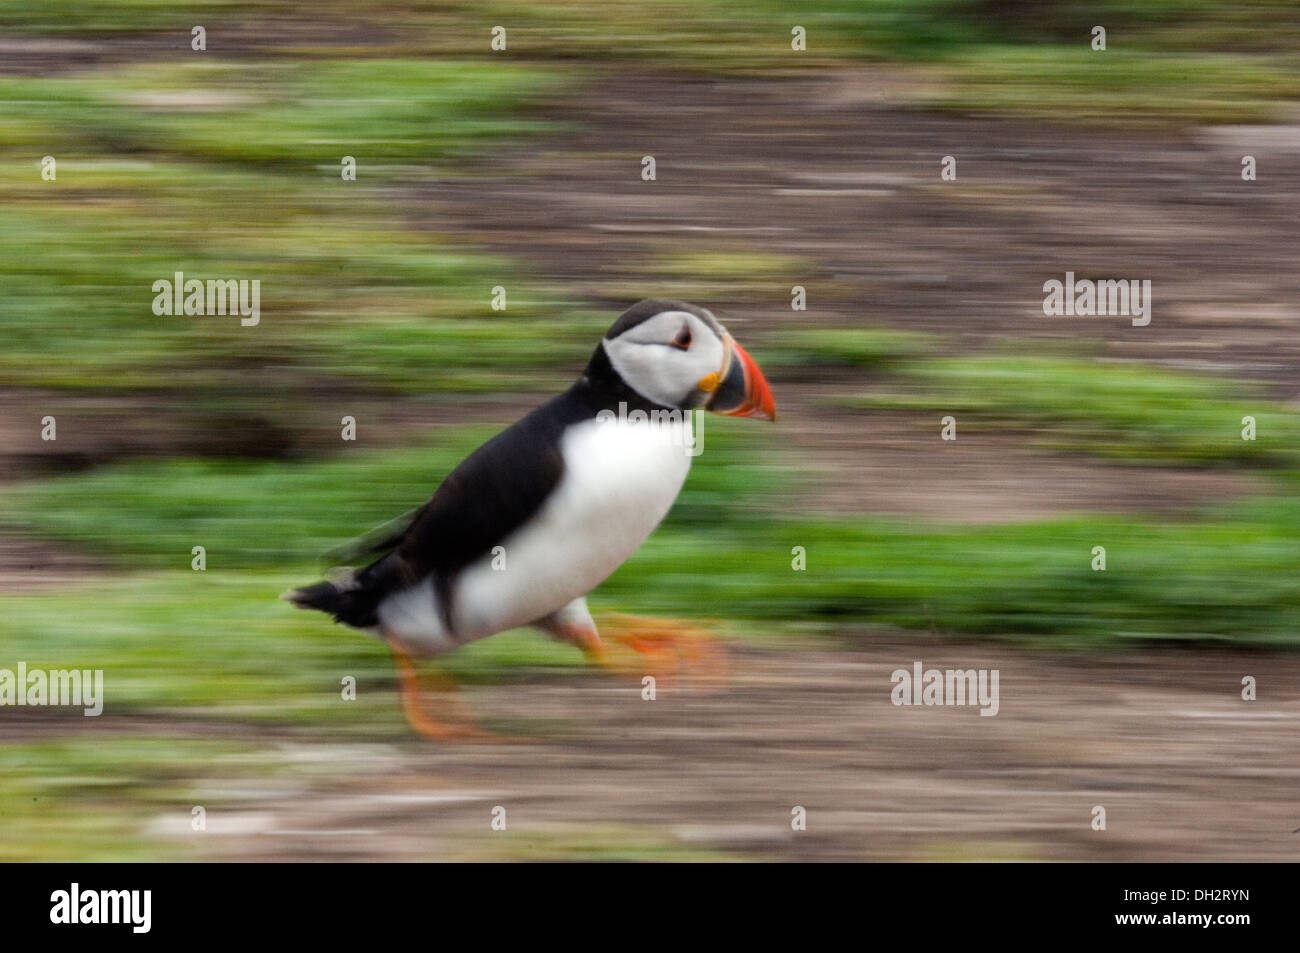 Puffin, Pulcinella di mare, Fratercula arctica, uccello, uccelli, Farne Island, United Kingdom, UK, panning Stock Photo